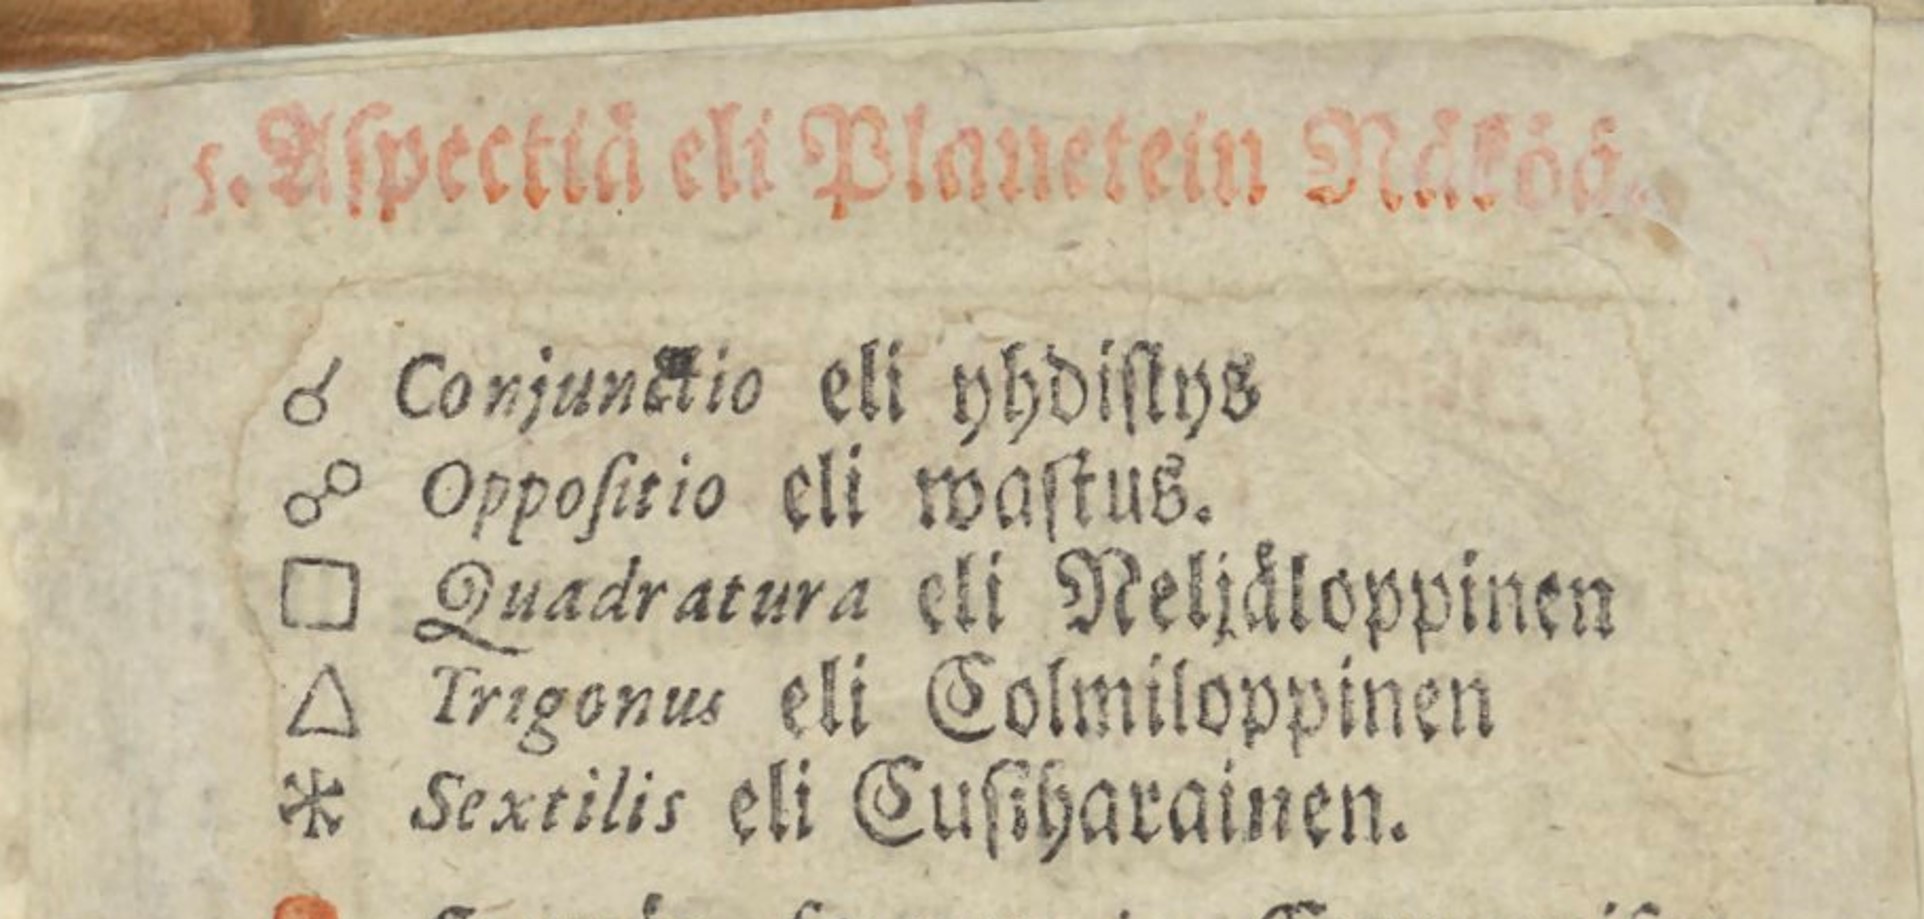 Tammelinin vuoden 1705 almanakassa on merkkejä selitetty sekä vierasperäisellä että suomenkielisellä sanalla. Esimerkiksi oppositio on vastus.